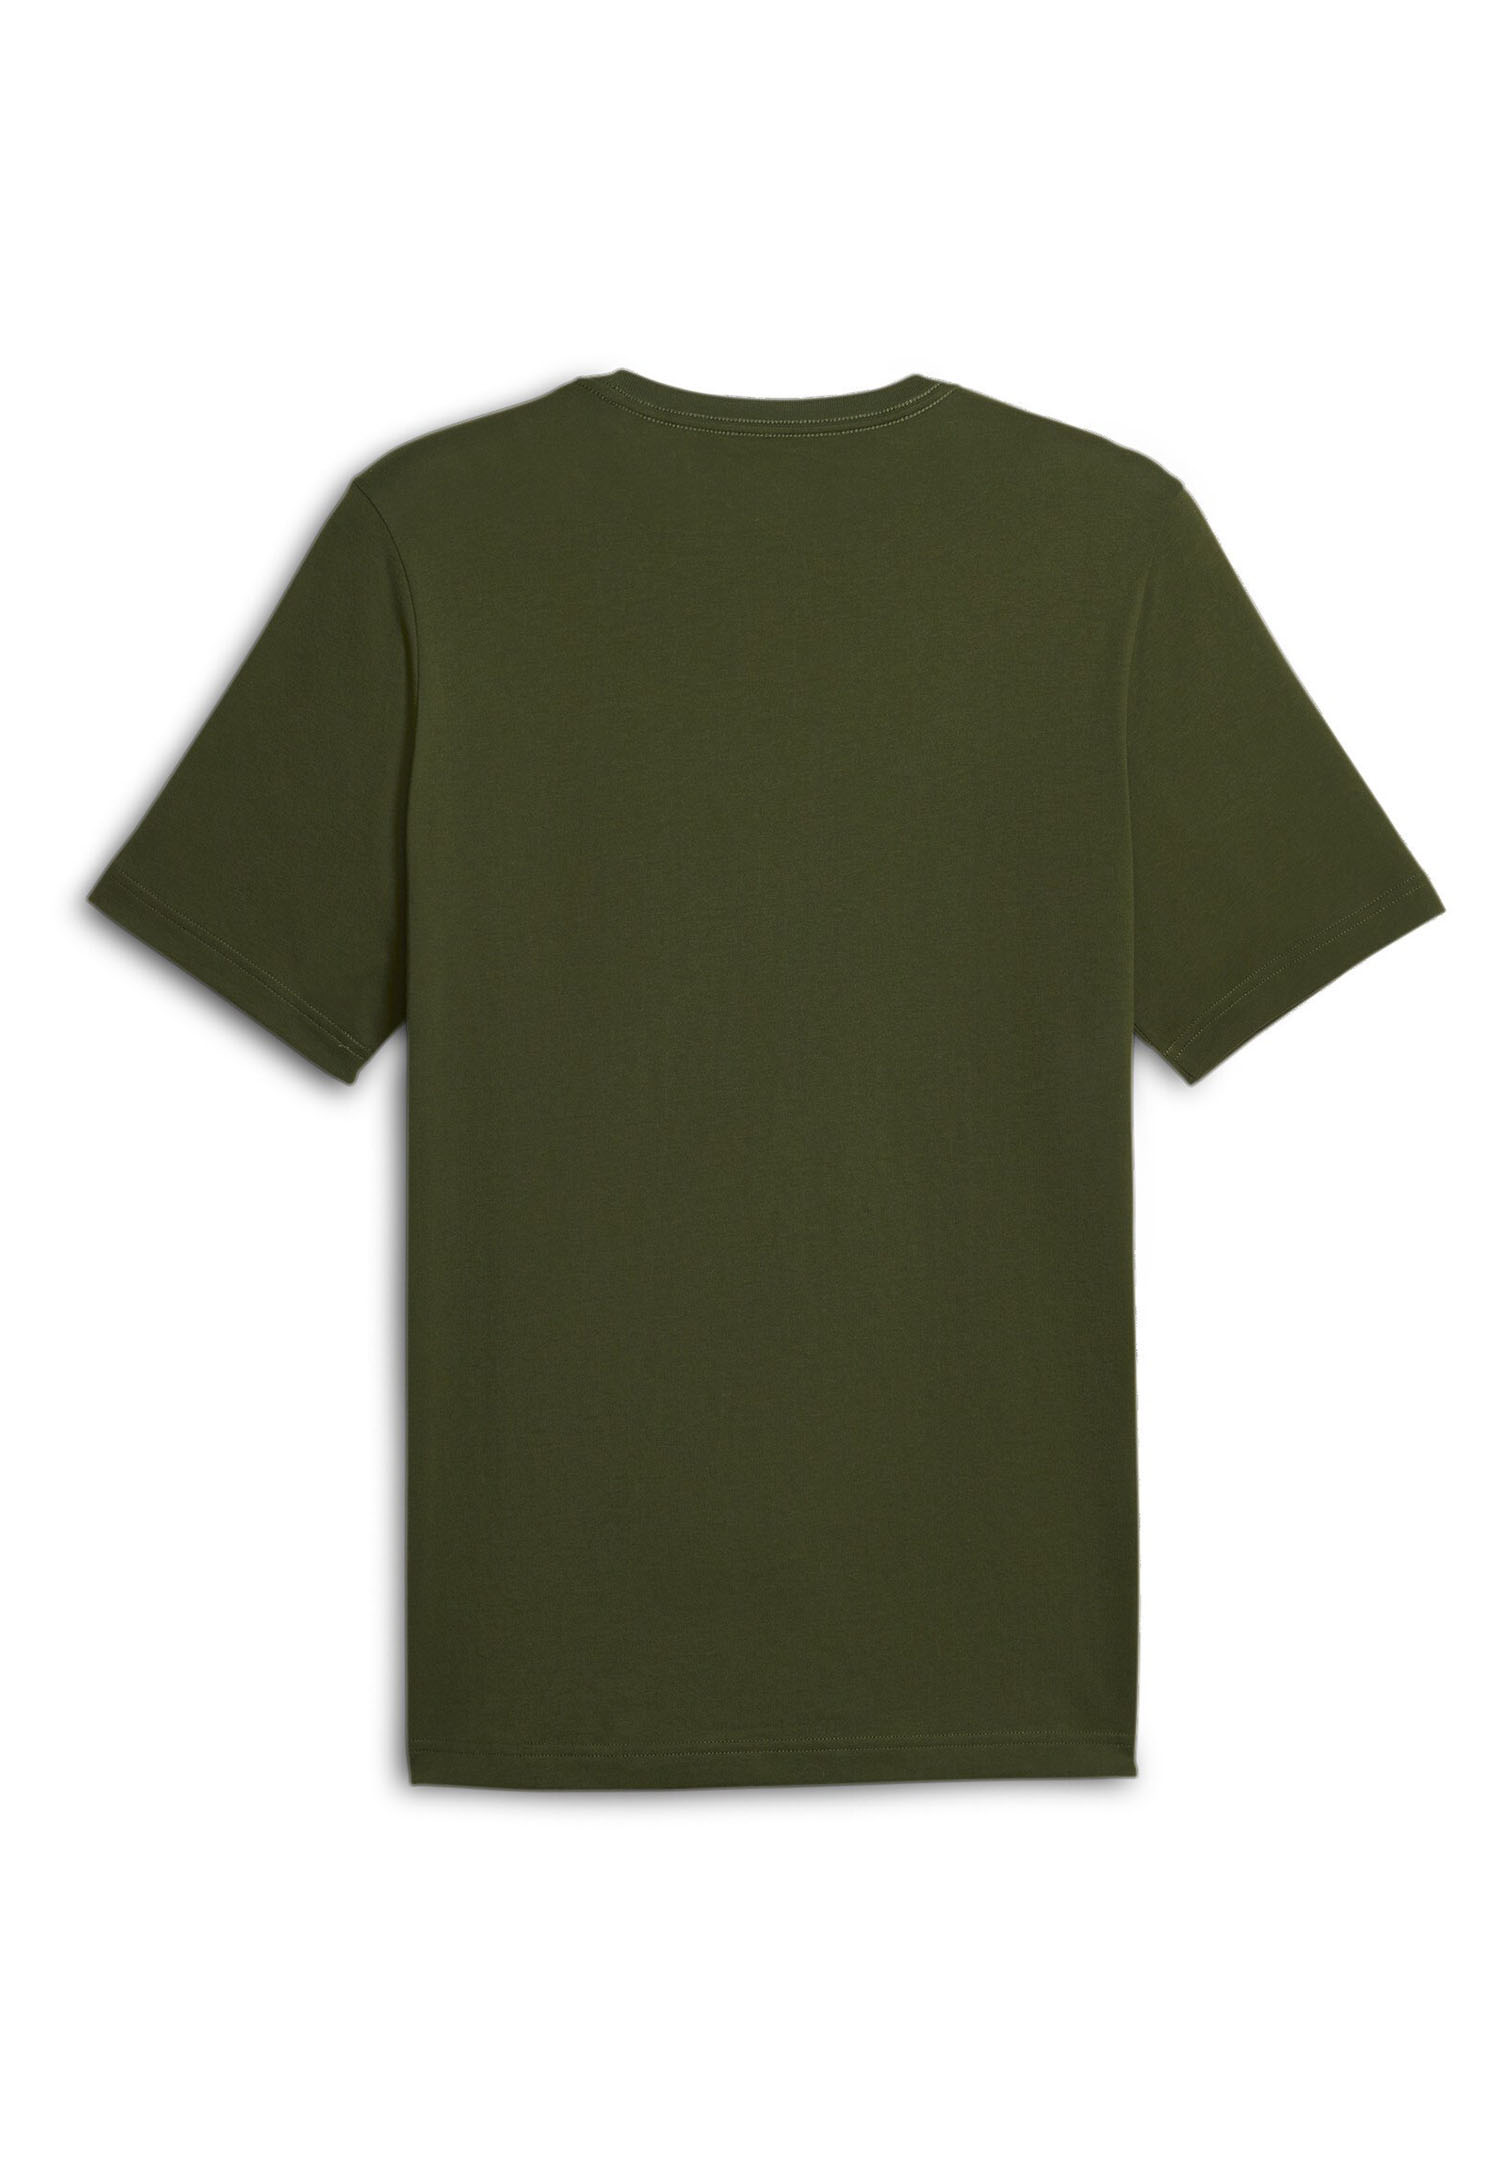 PUMA Herren ESS Essential Logo Tee T-Shirt 586667 31 grün Übergröße bis 4XL  